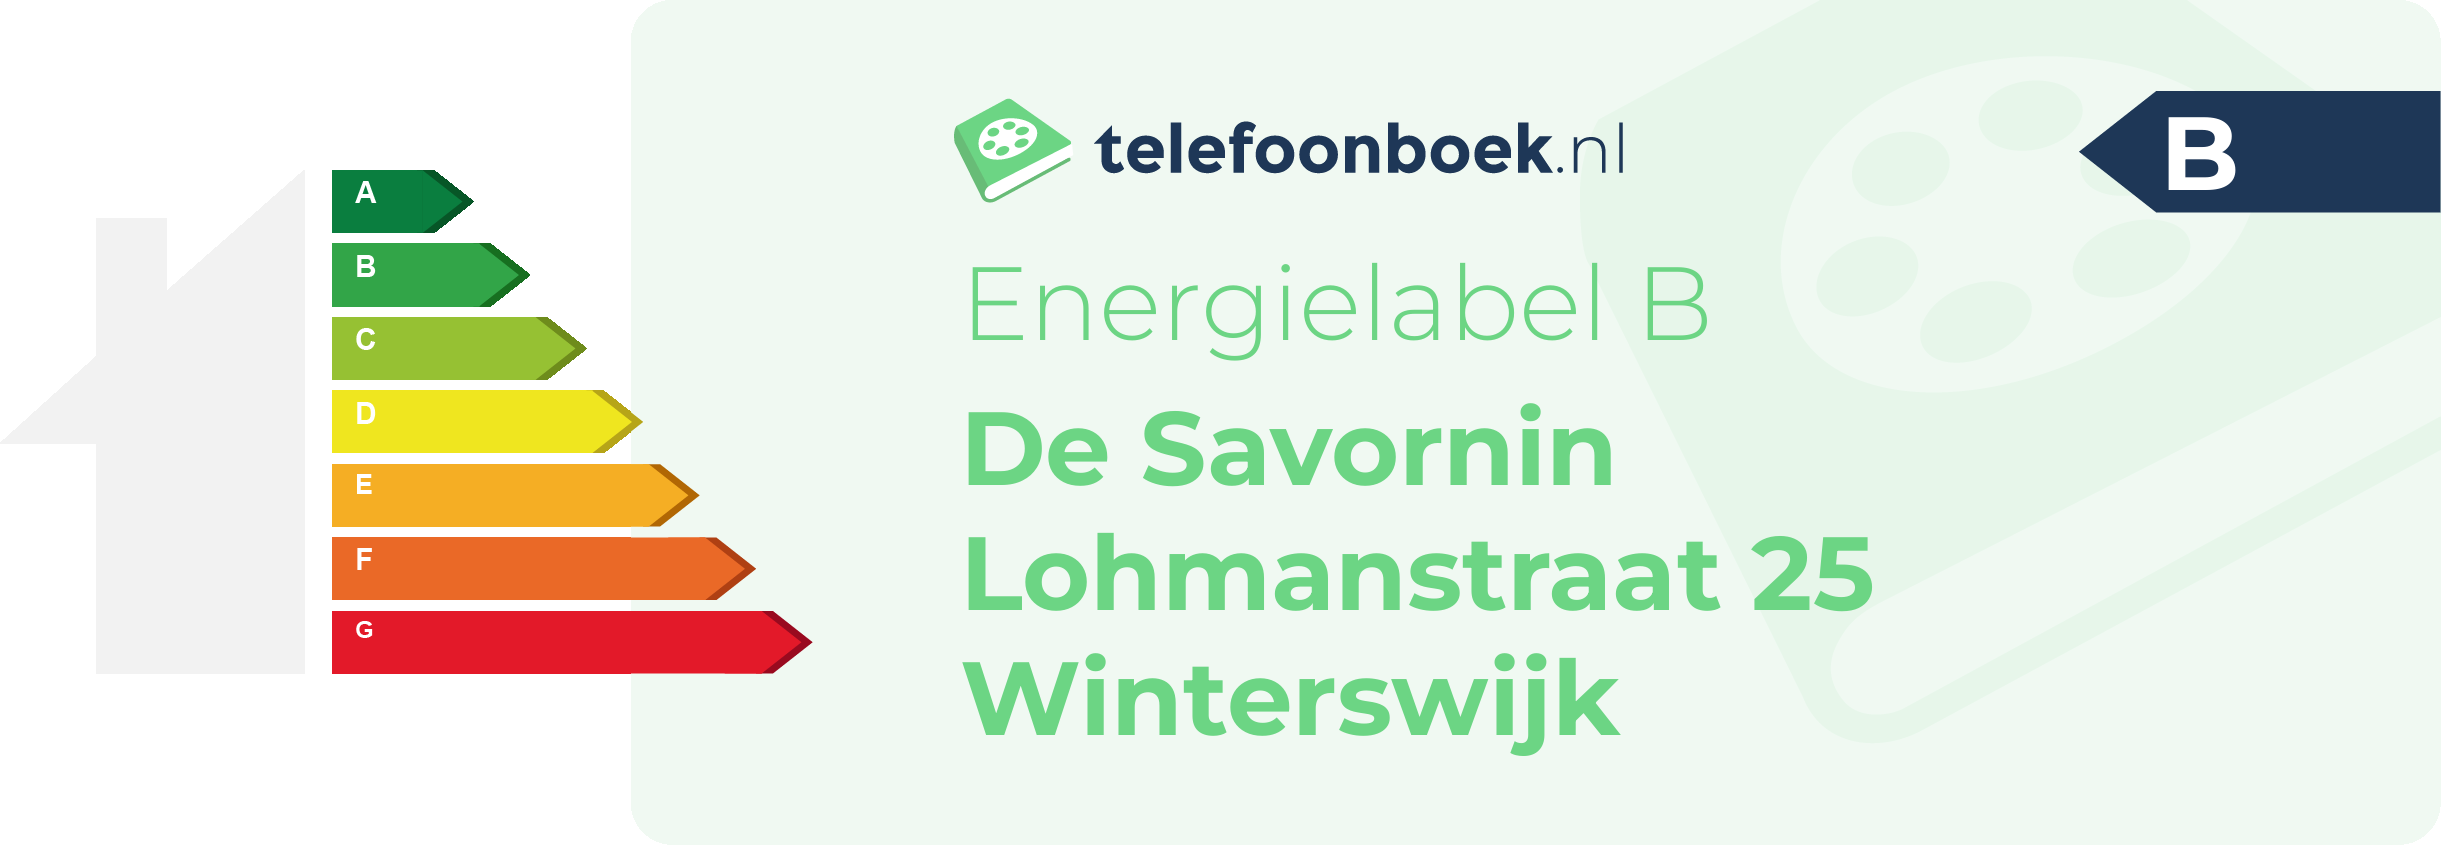 Energielabel De Savornin Lohmanstraat 25 Winterswijk